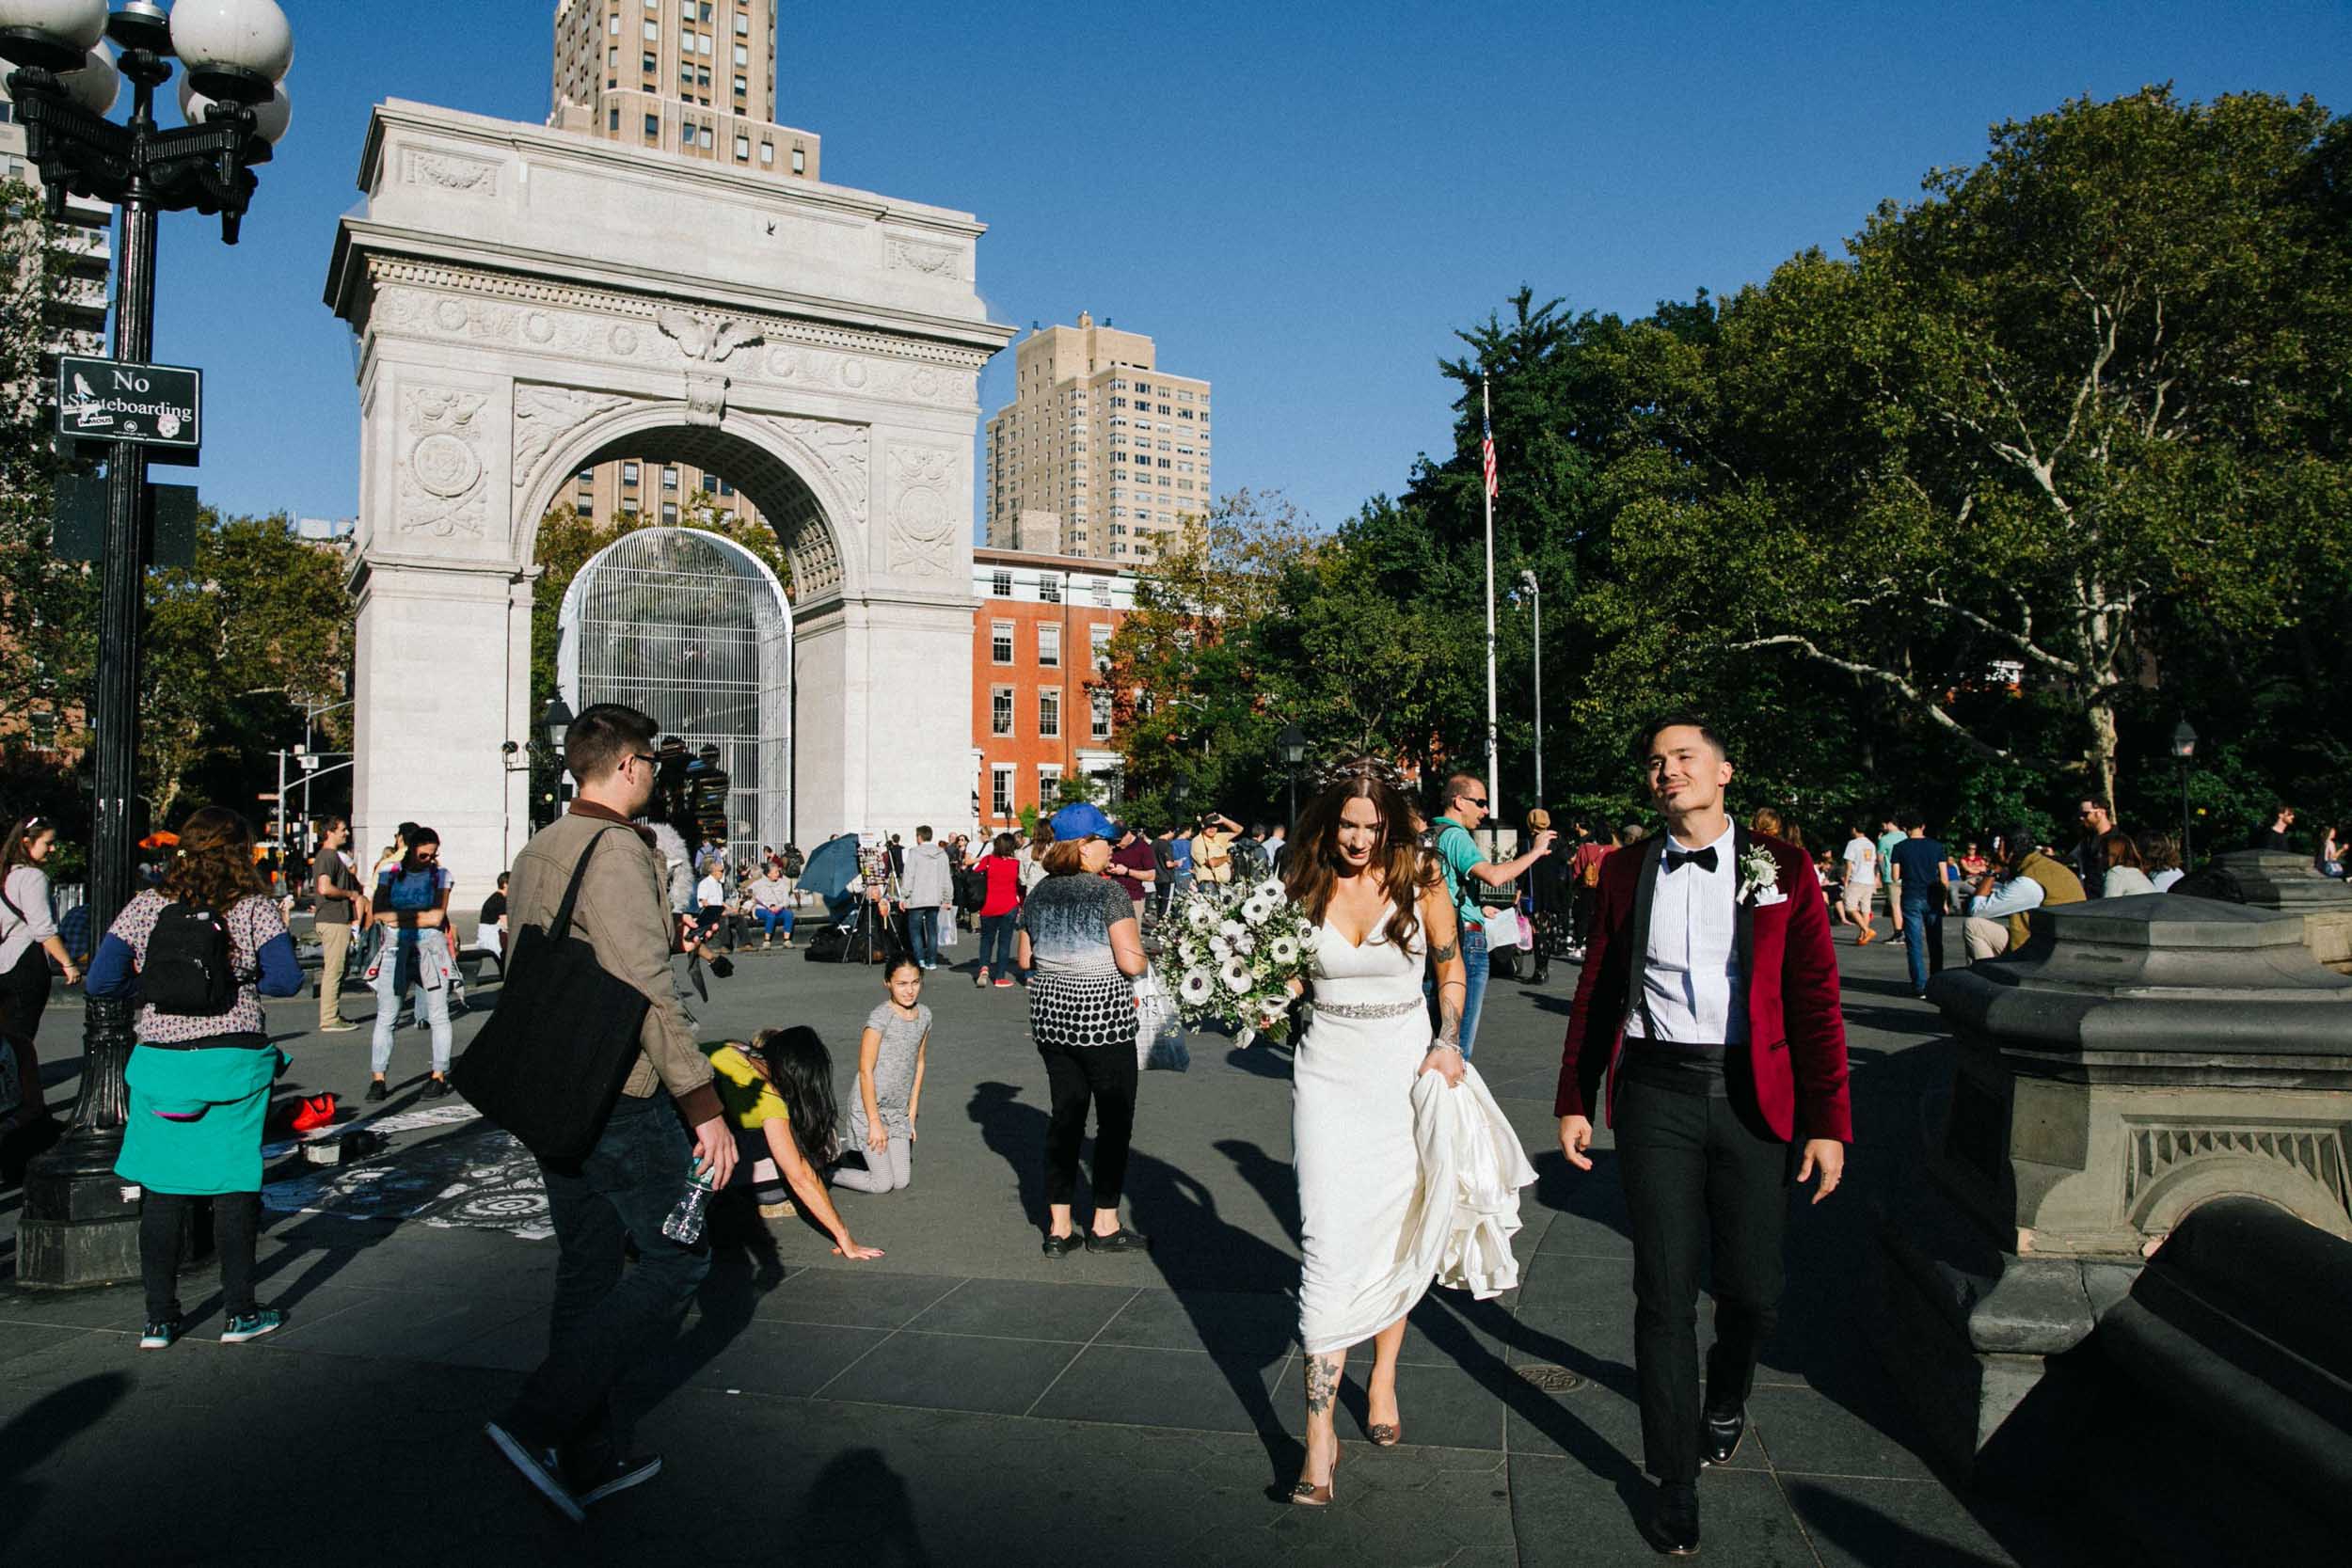  Sarah Kuszelewicz Photography New York City International Elopement Lifestyle Wedding Photographer marlton hotel wedding nyc 